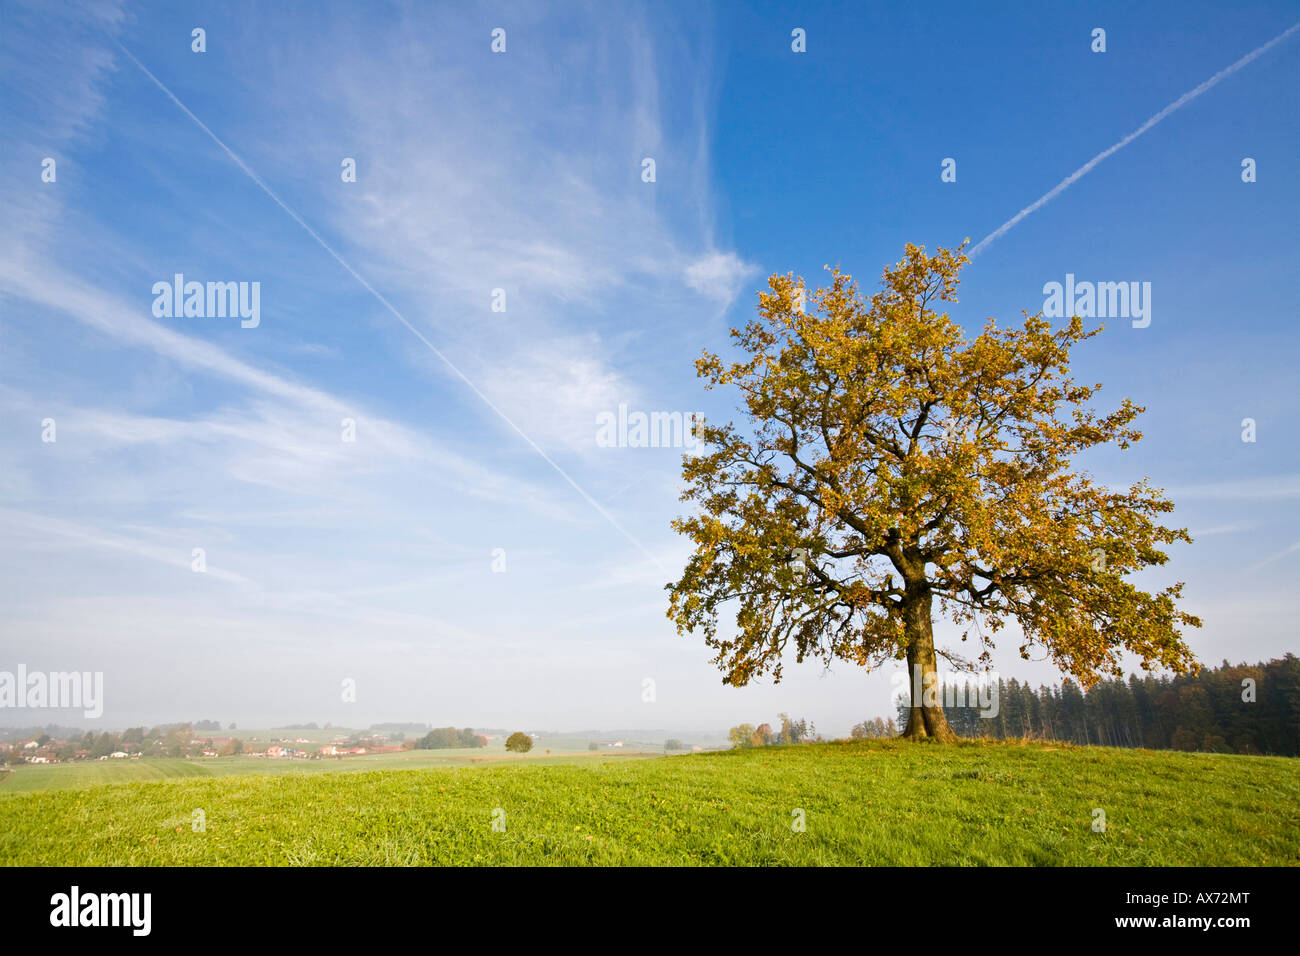 Germany, Bavaria, Beech tree Stock Photo